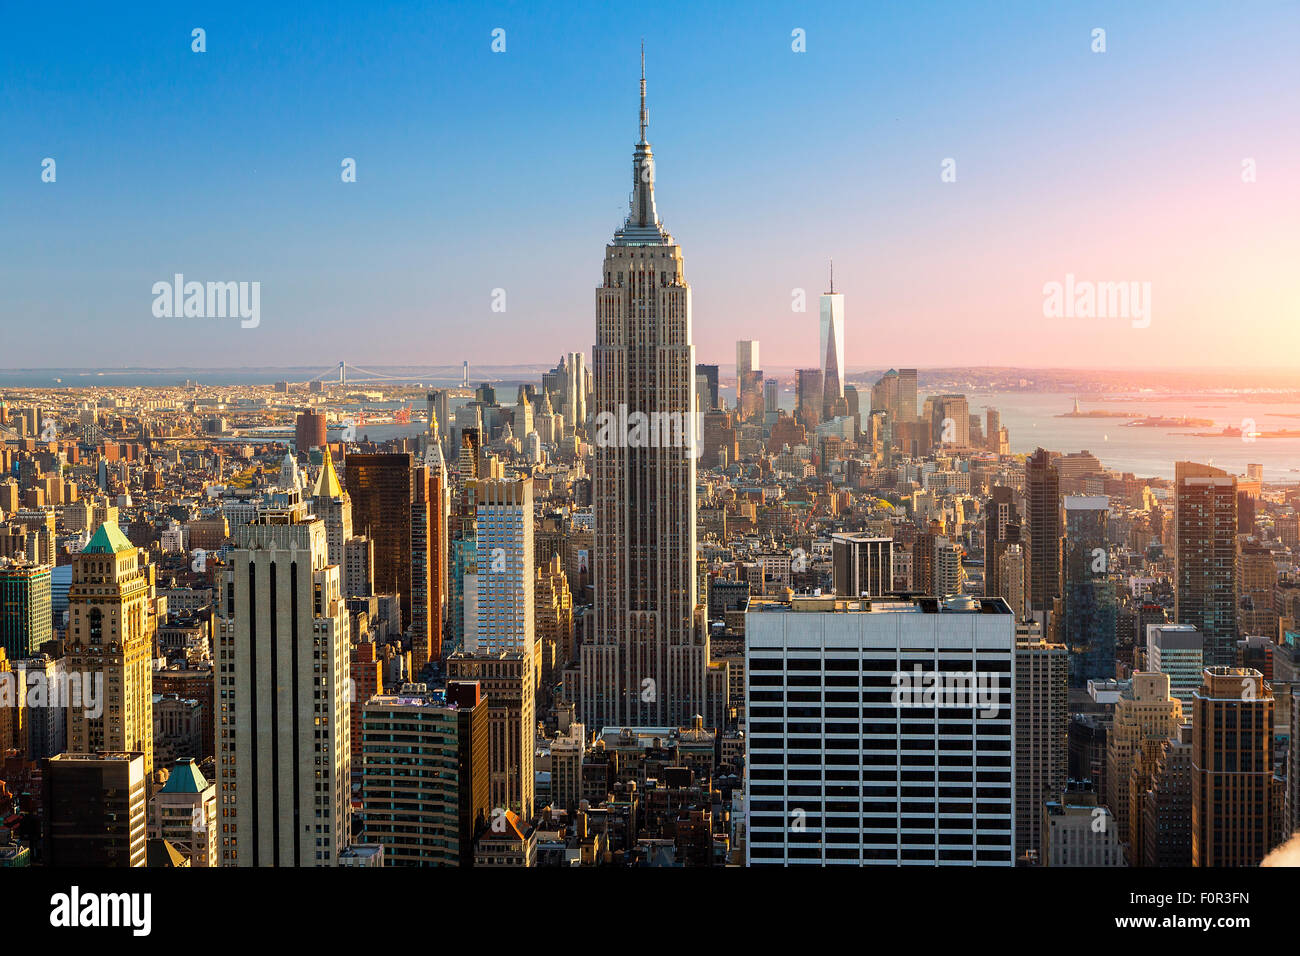 La ville de New York, l'Empire State Building au coucher du soleil Banque D'Images